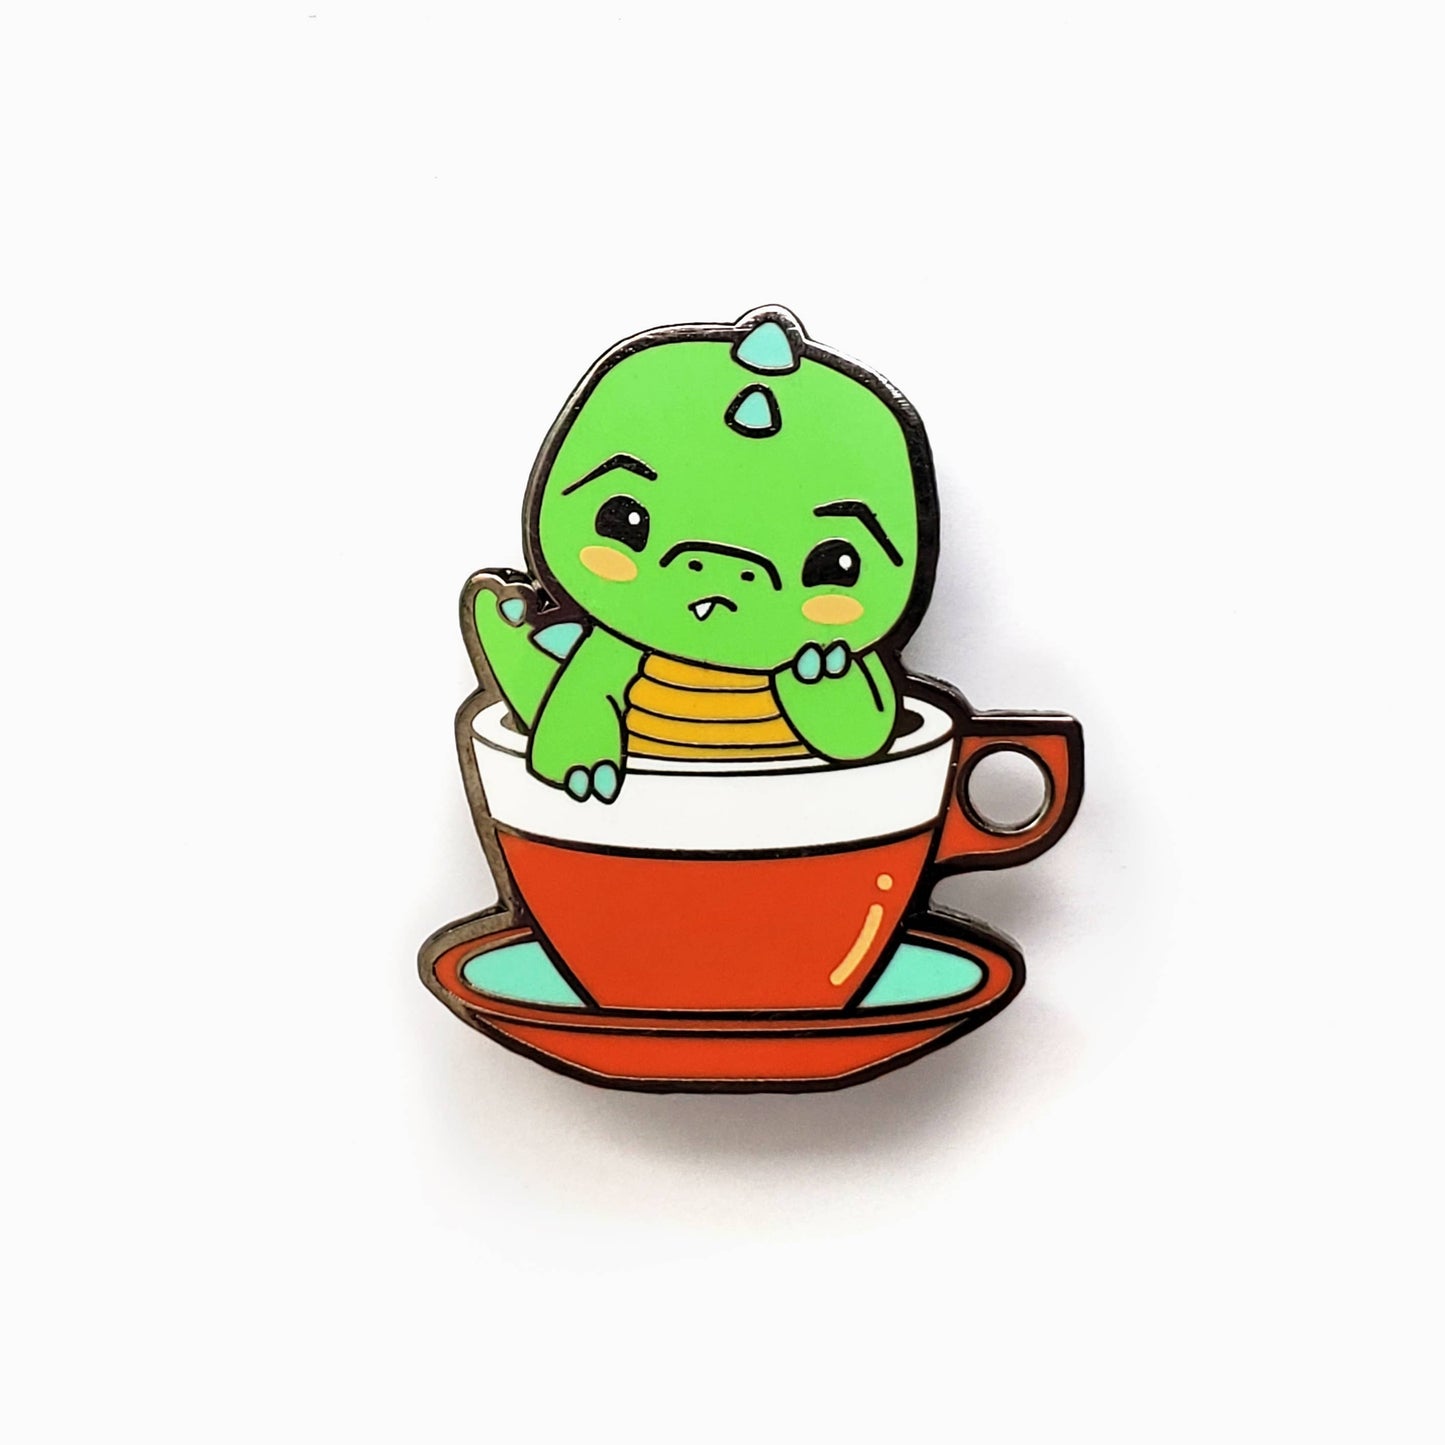 LuxCups Creative - Green Tea Rex Pin (ON SALE!)